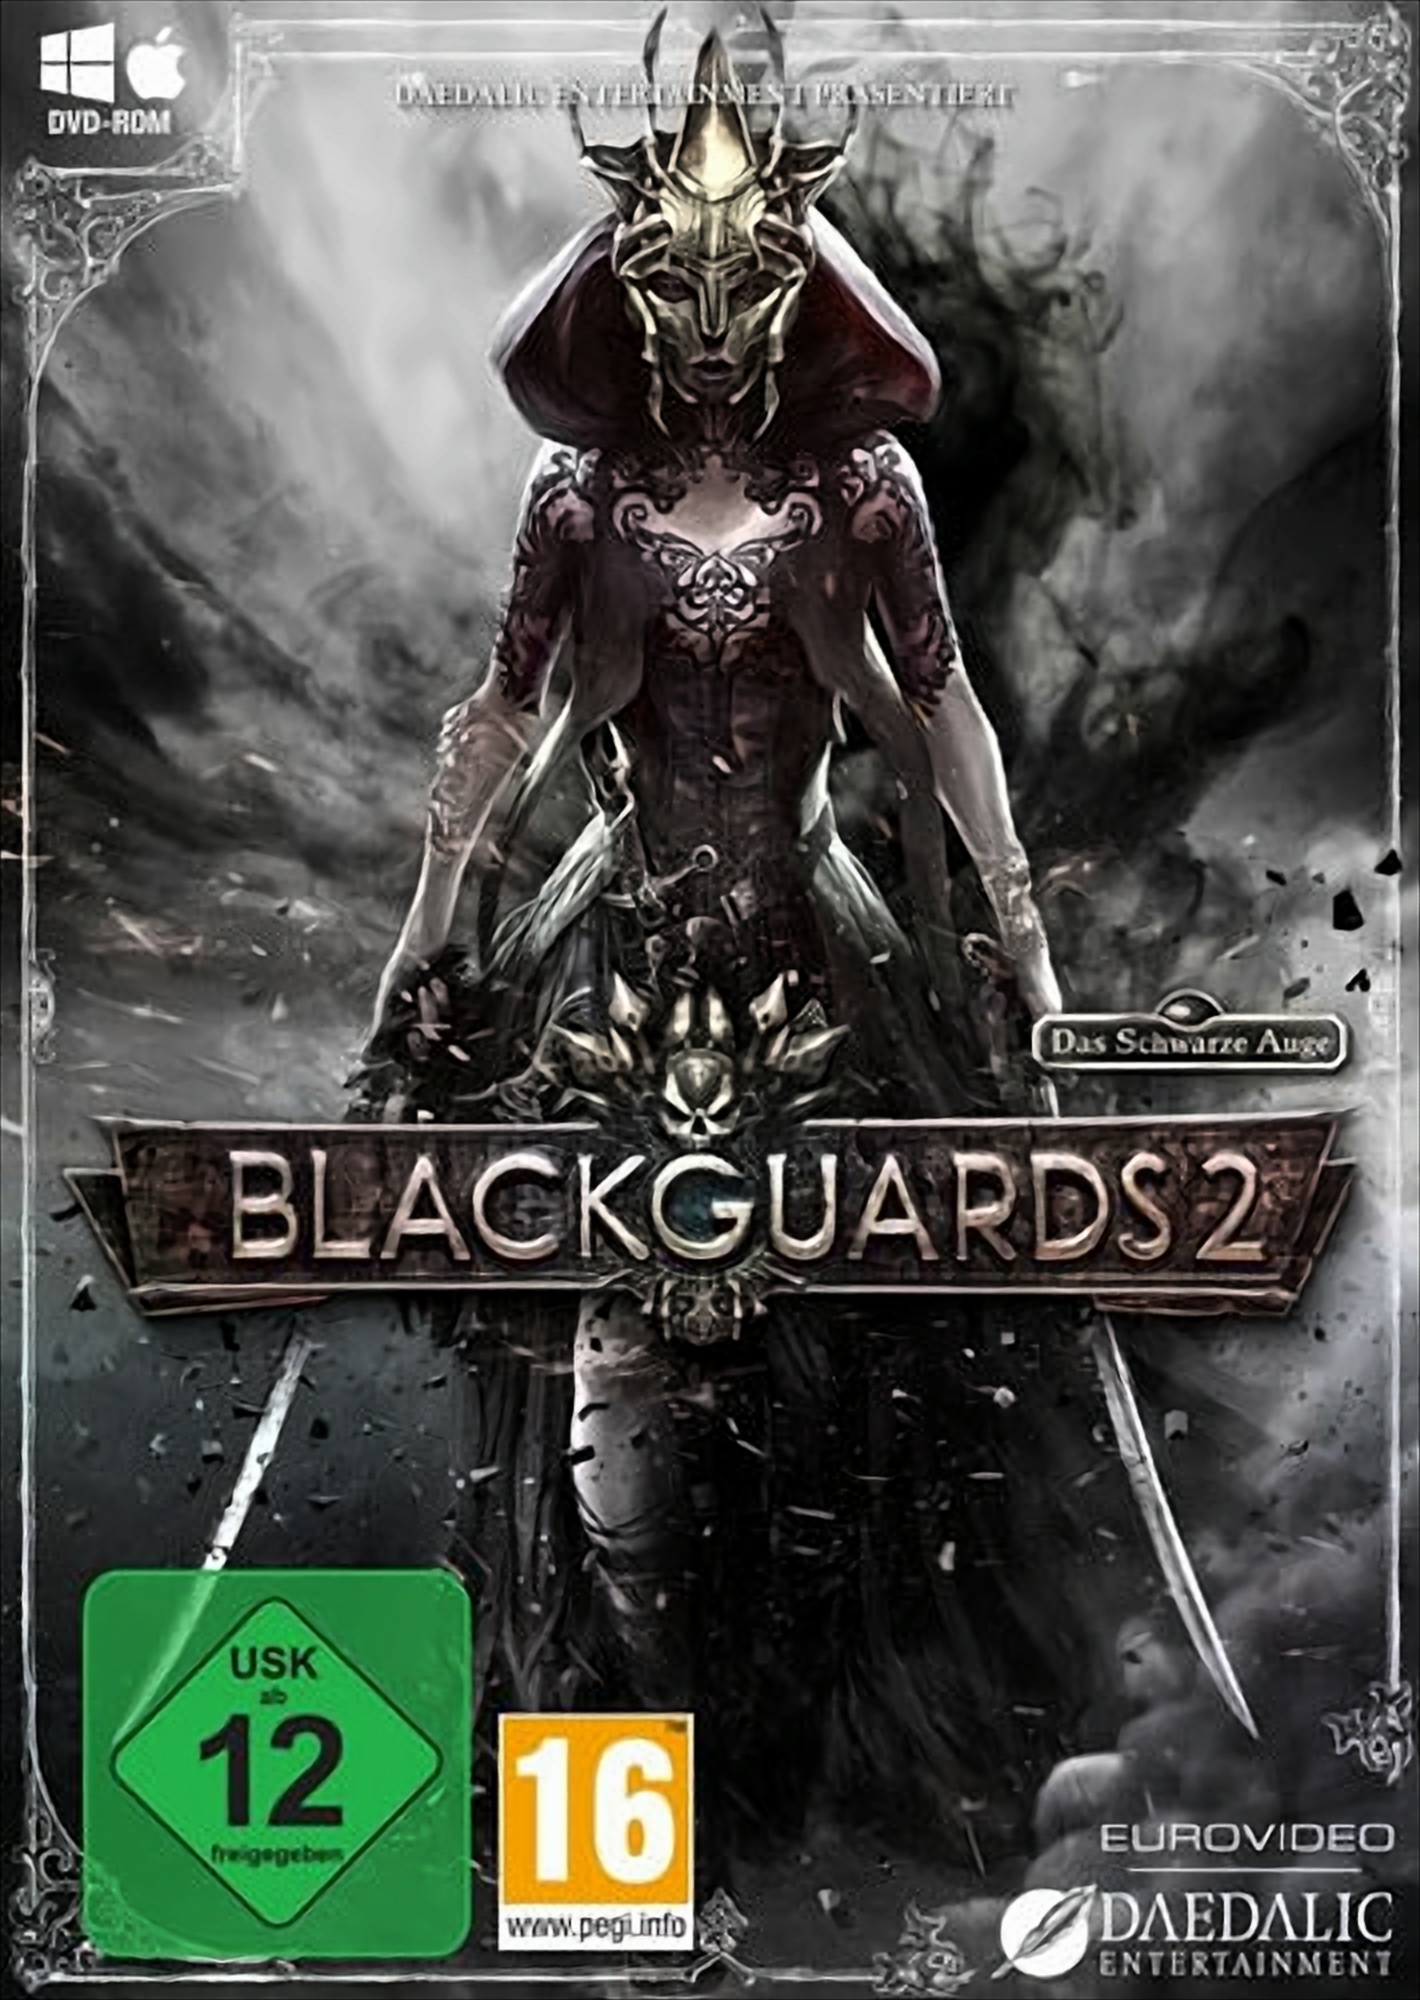 Das Schwarze Auge: Blackguards 2 von Daedalic